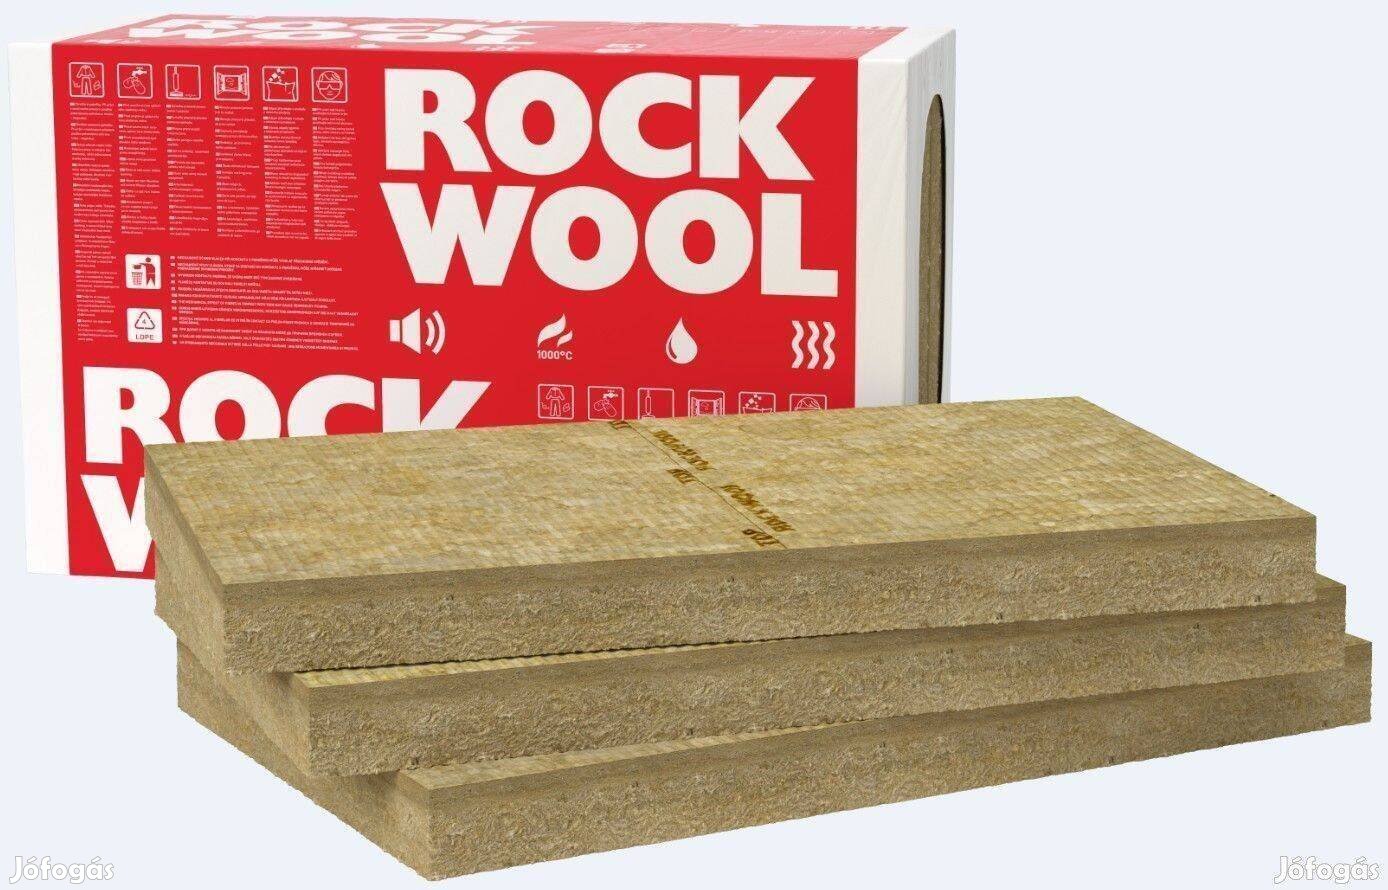 Rockwool Frontrock Super vakolható kőzetgyapot 14cm 7969 Ft/m2